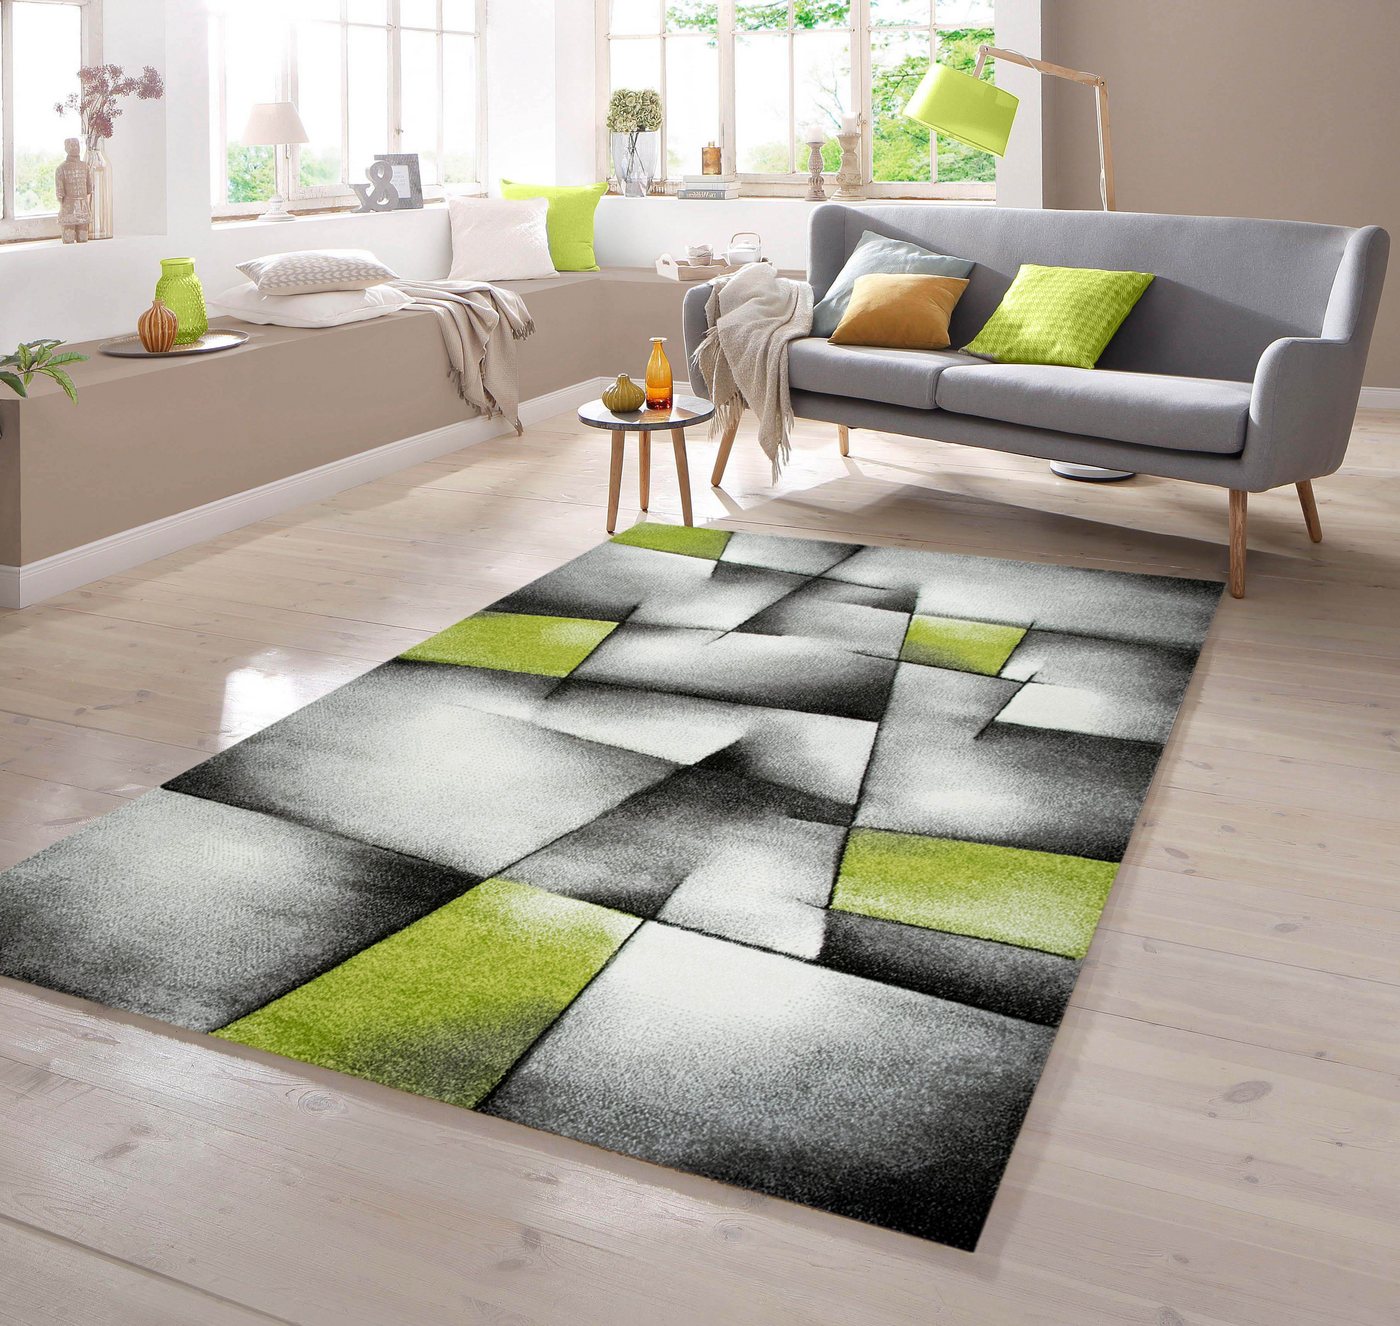 Teppich Designer Teppich mit Konturenschnitt Karo Muster Grün Grau Weiß Schwarz, TeppichHome24, rechteckig von TeppichHome24